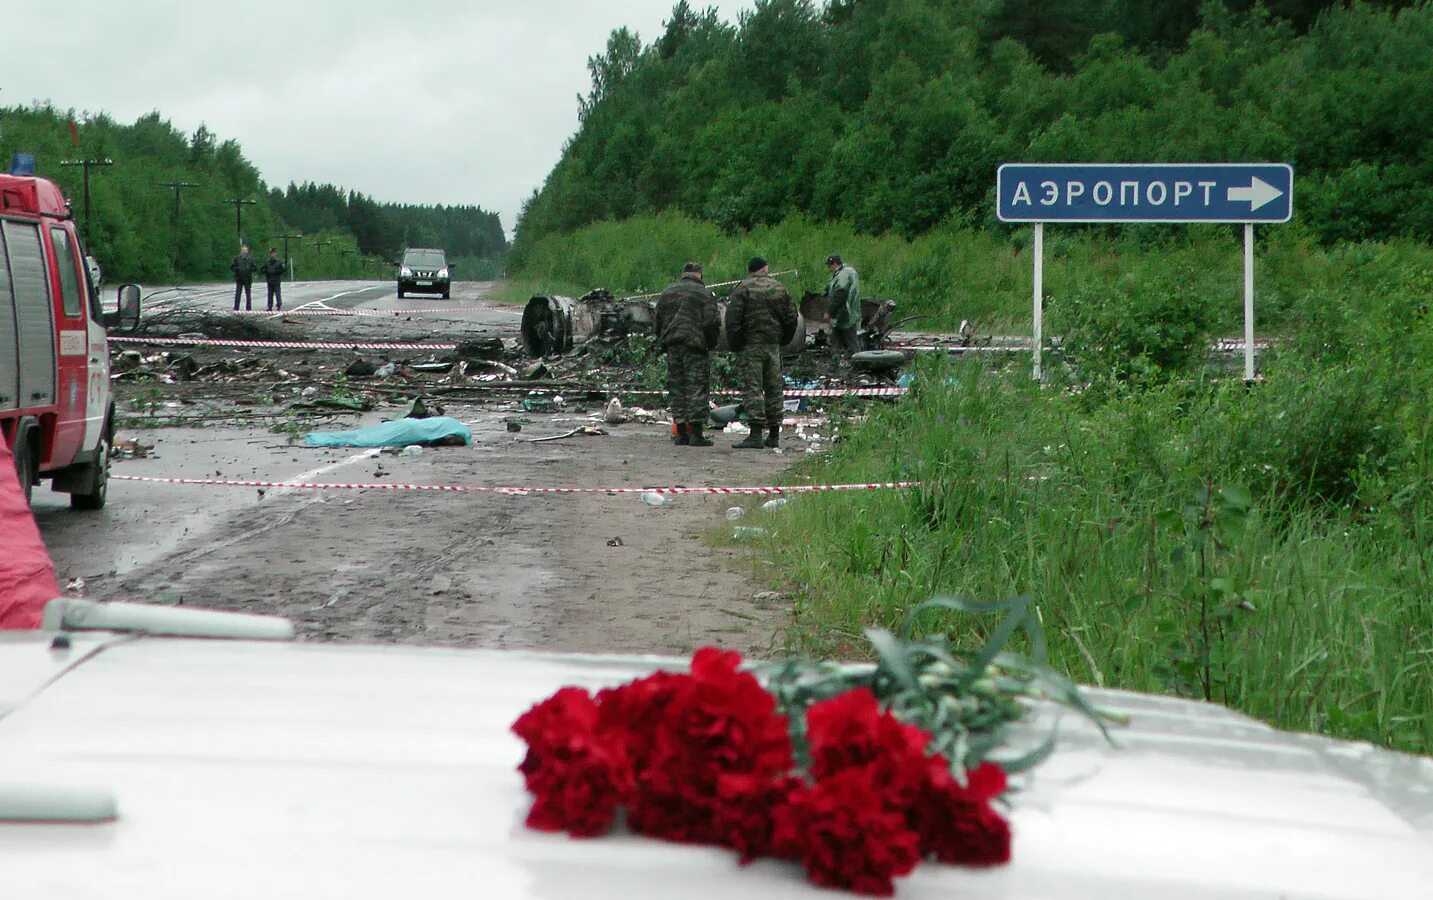 20 июня происходило. Крушение ту 134 под Петрозаводском. Петрозаводск авиакатастрофа ту 134. 20 Июня 2011 авиакатастрофа ту-134 под Петрозаводском. Крушение ту 134 в Карелии.